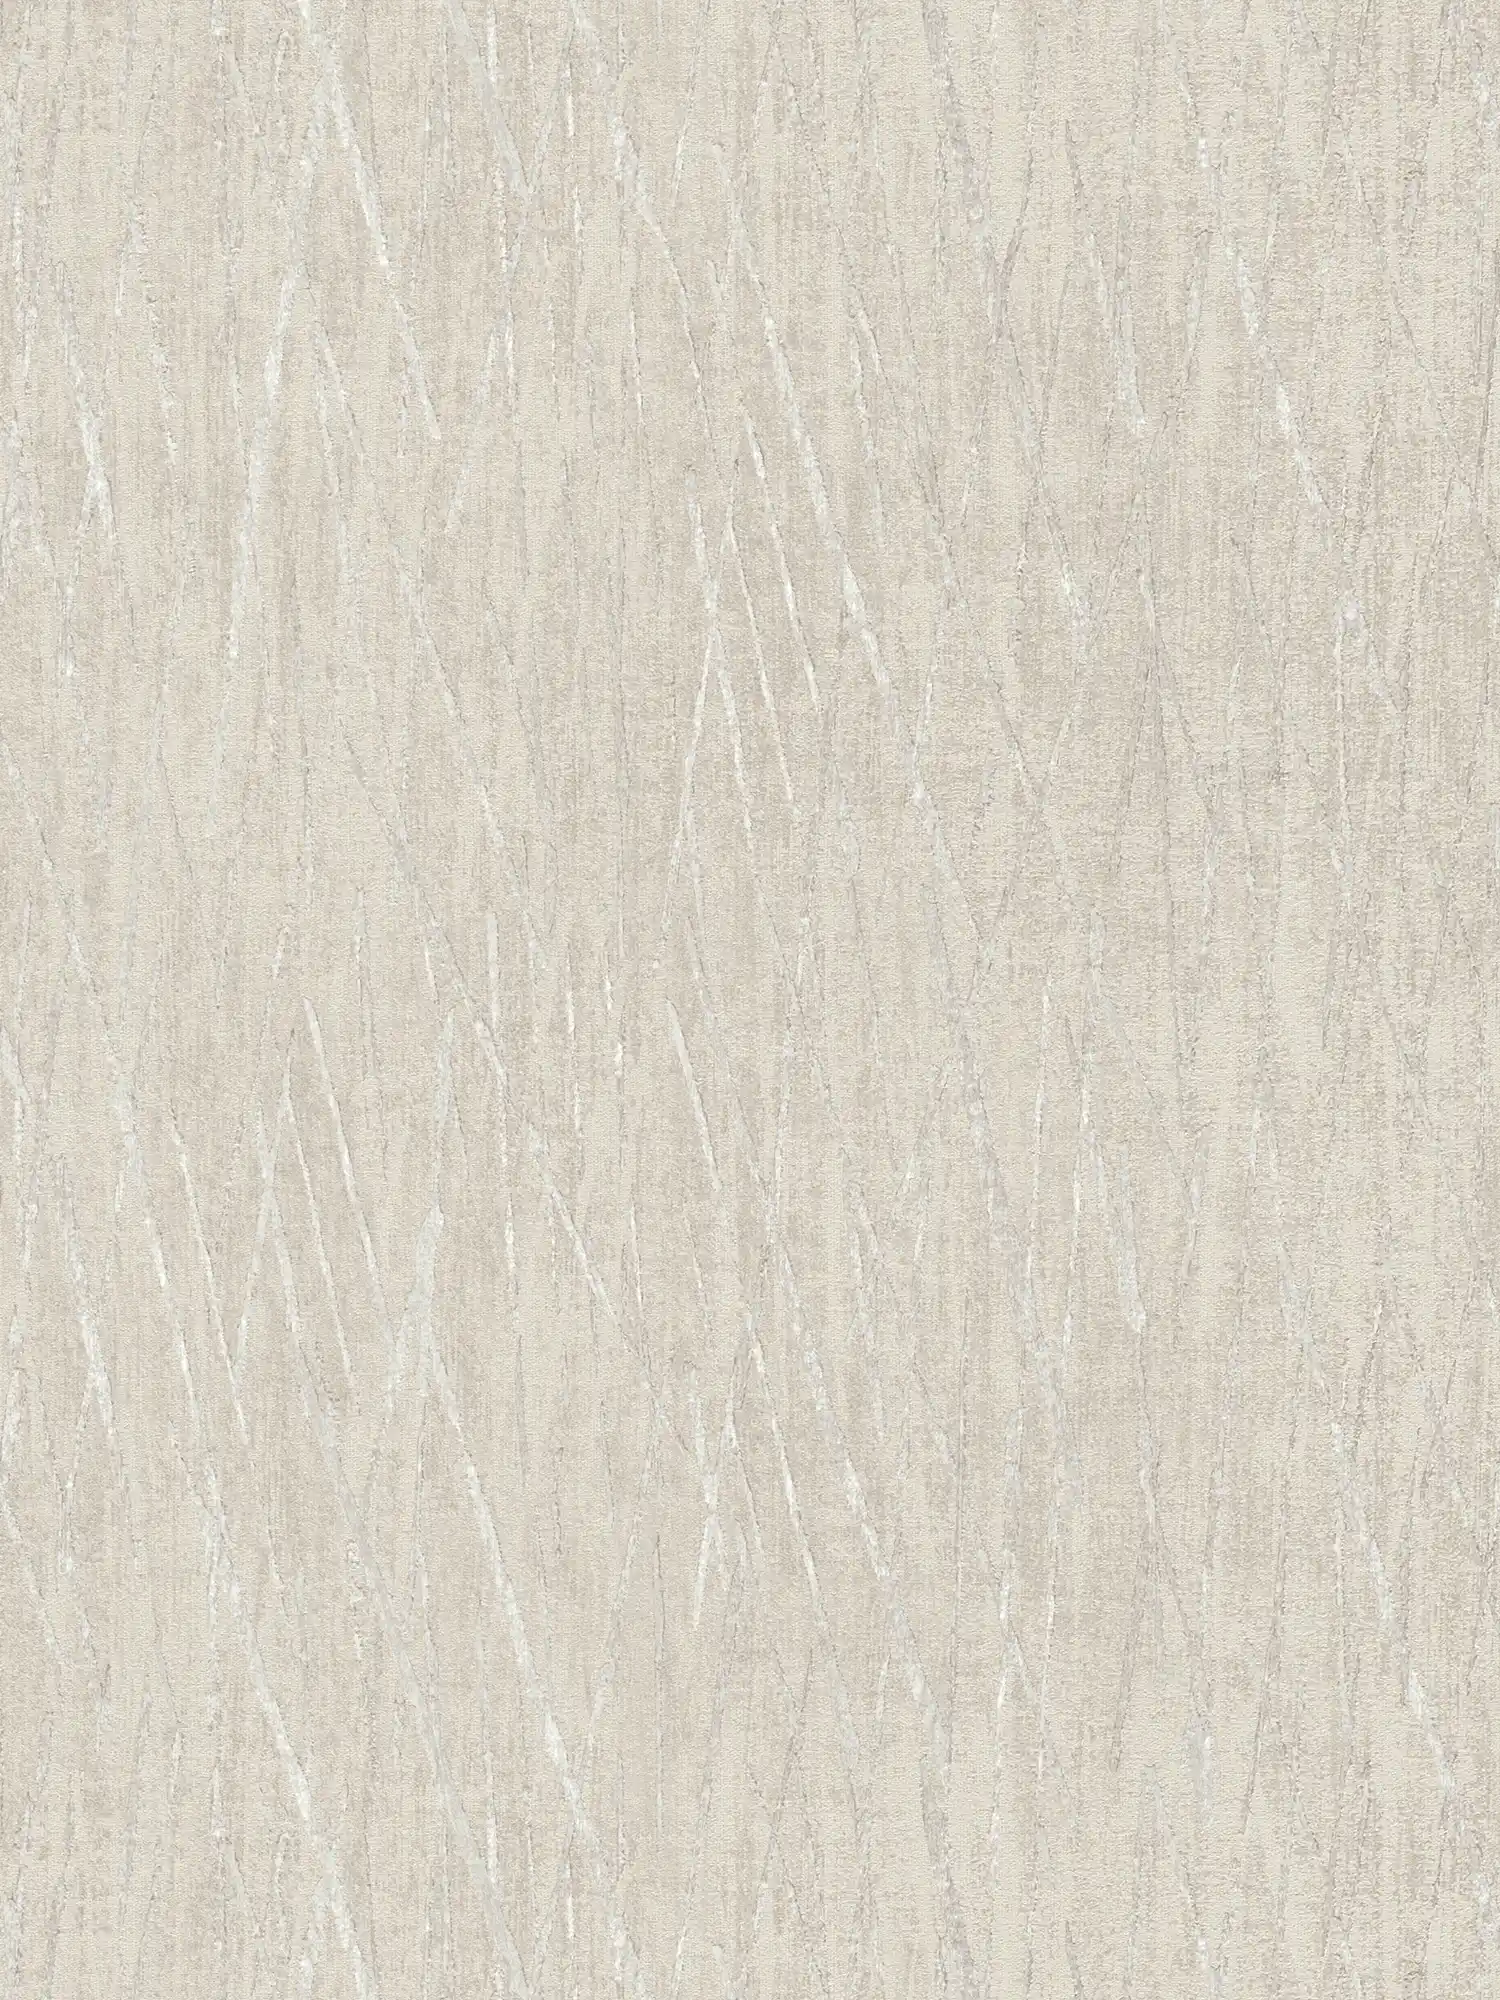 Scandinavian wallpaper with metallic design - grey, metallic
